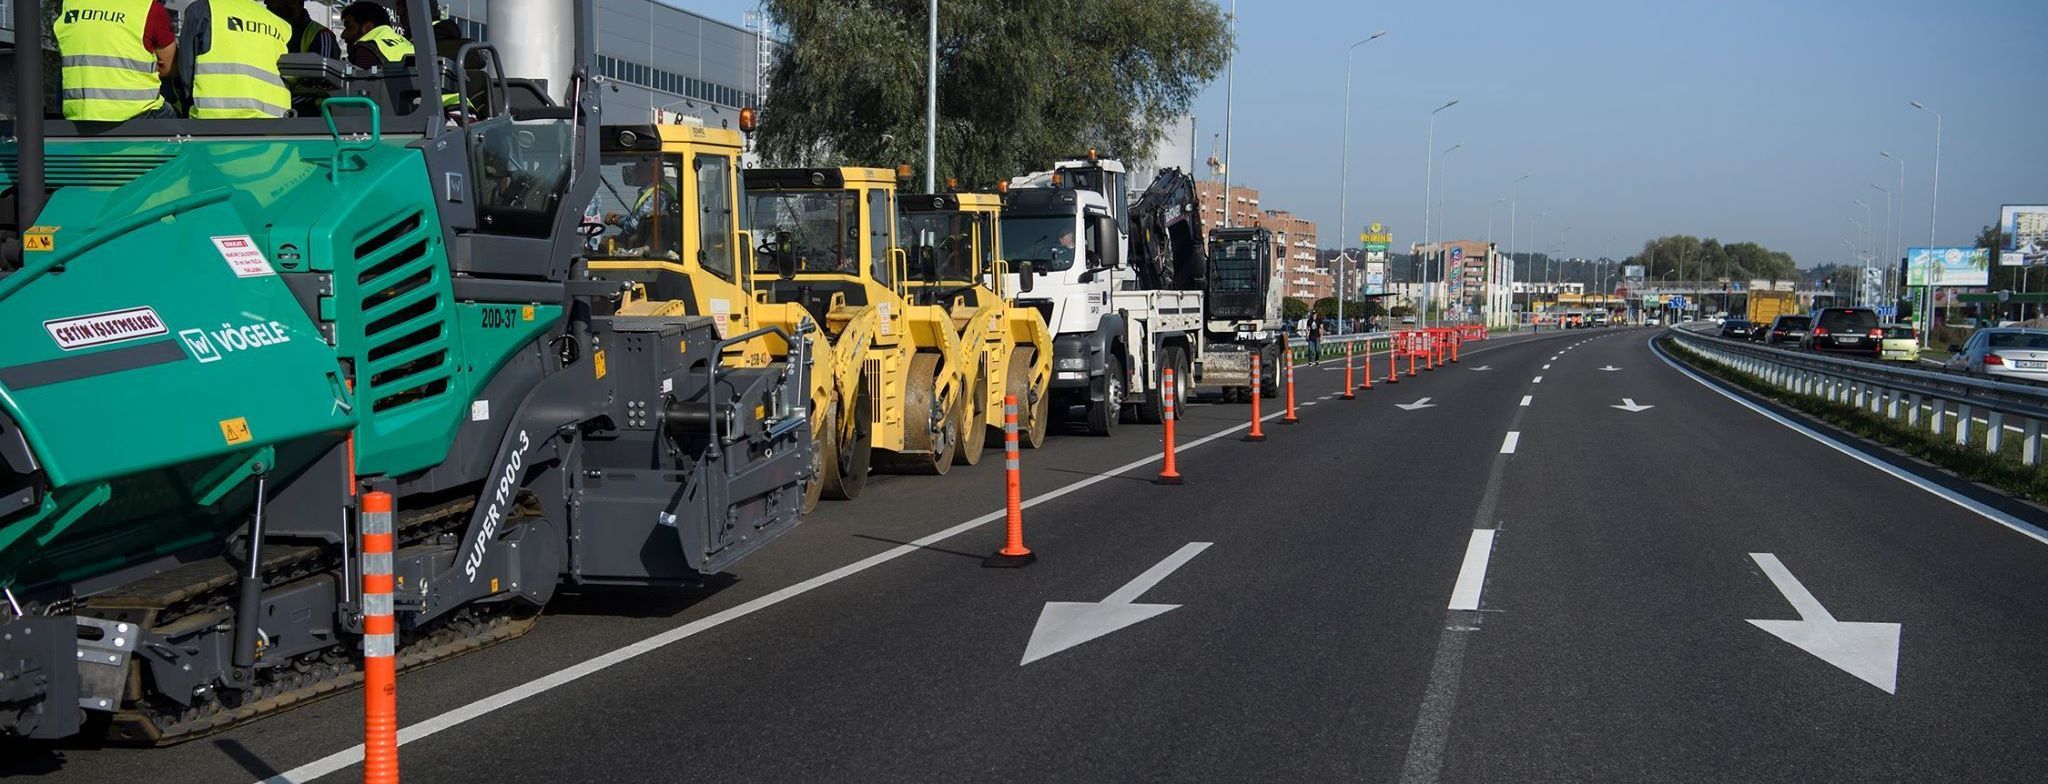 Укравтодор обнародовал список дорог, которые будут ремонтировать в 2018 году